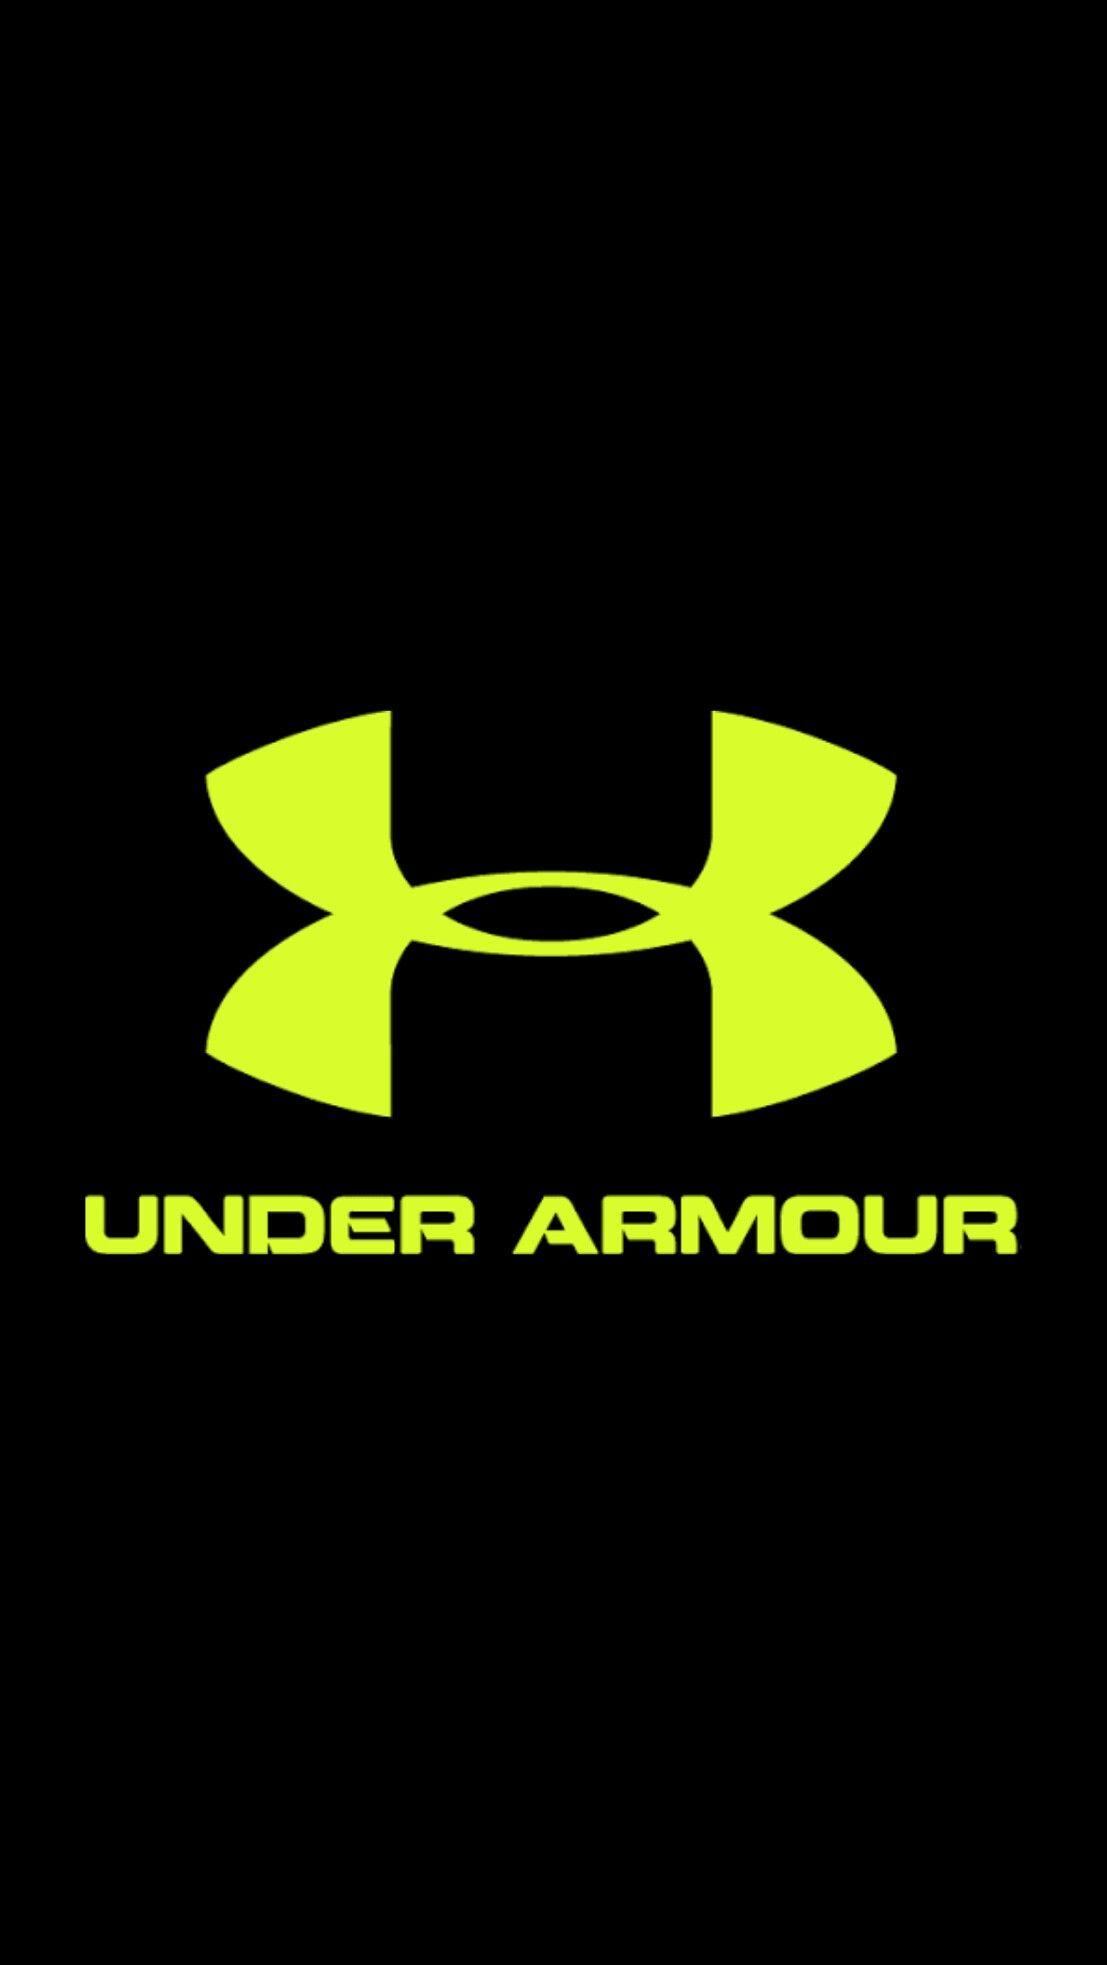 Aromor Umder Logo - Pin by Jenn Choate on Wallpaper | Under armour, Armour, Under armour ...